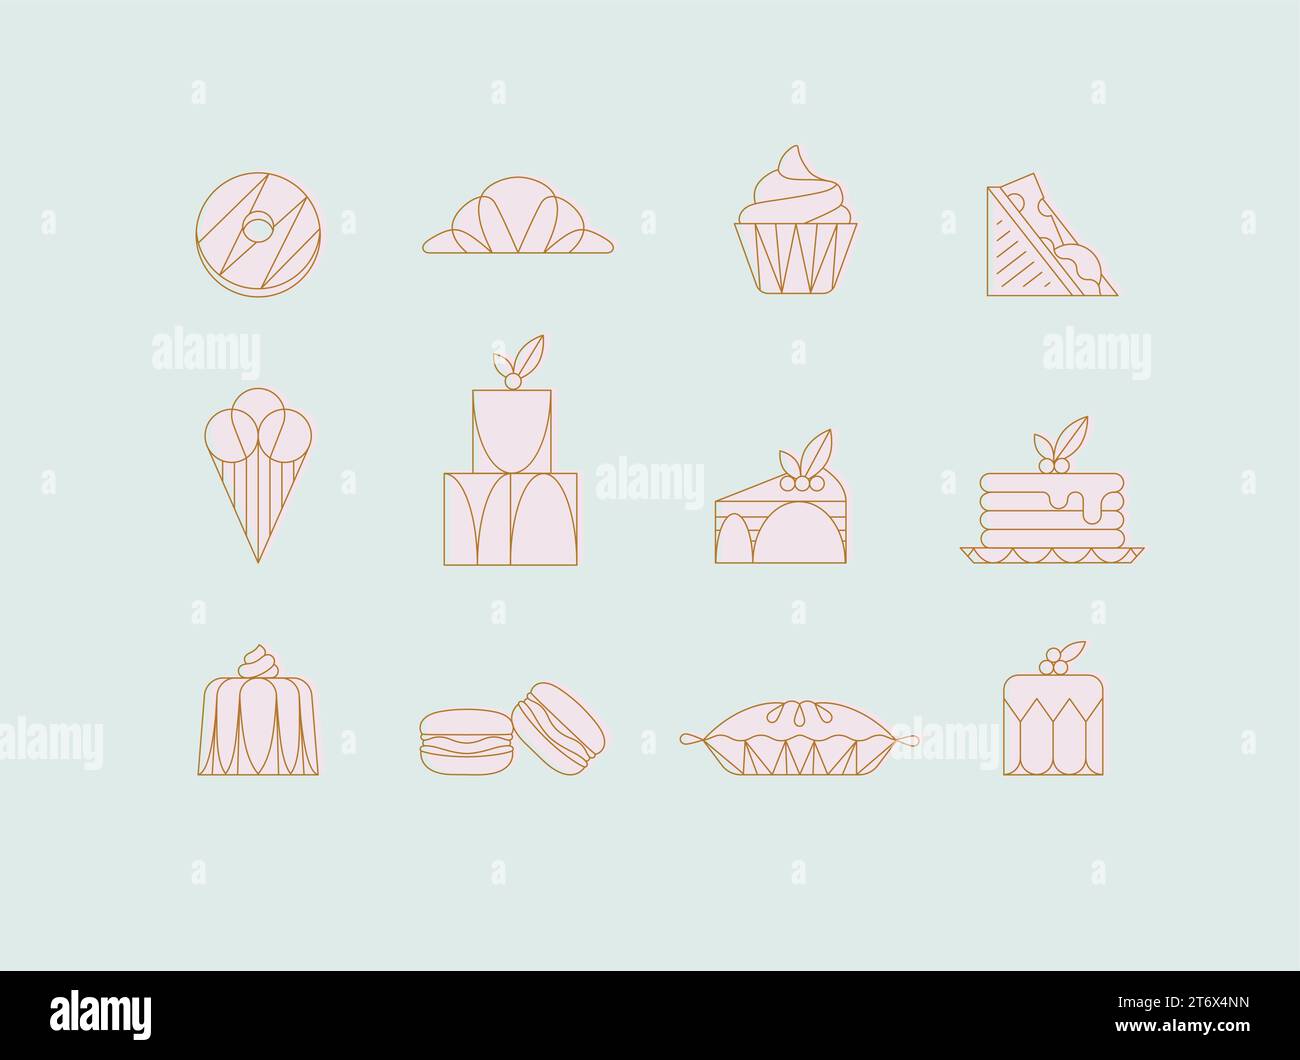 Iconos de postre en donut estilo art deco, croissant, cupcake, sándwich, helado, pastel, postre, panqueques, macarrones, pastel de jalea dibujo con rosado encendido Ilustración del Vector